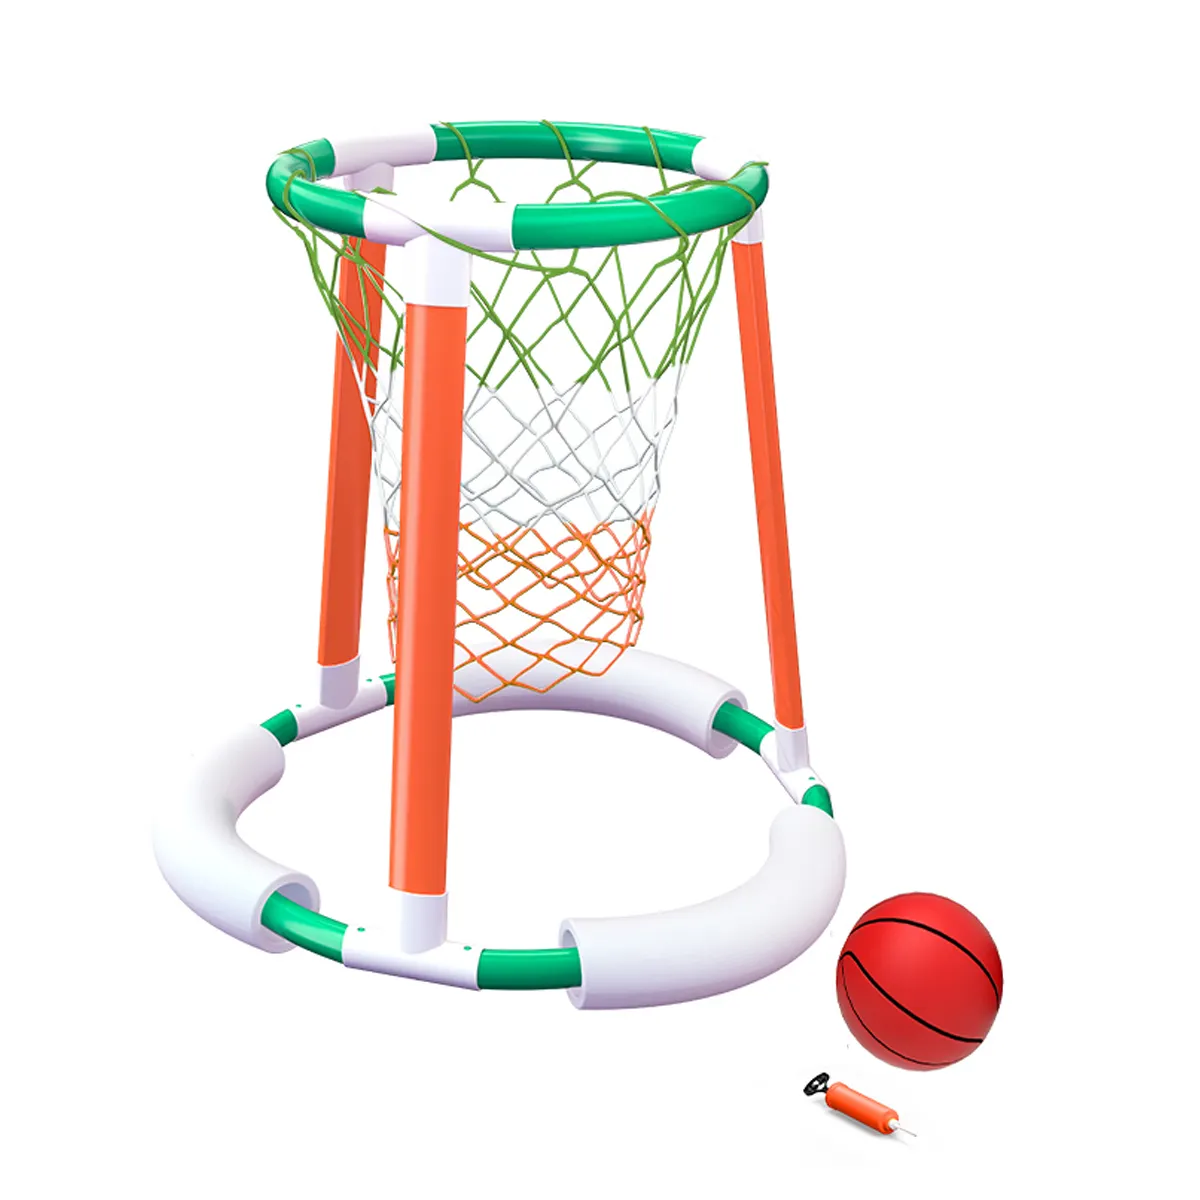 Jogo inflável do brinquedo do jogo do basquetebol da piscina do divertimento para crianças e adultos jogo durável e duradouro do basquetebol da água